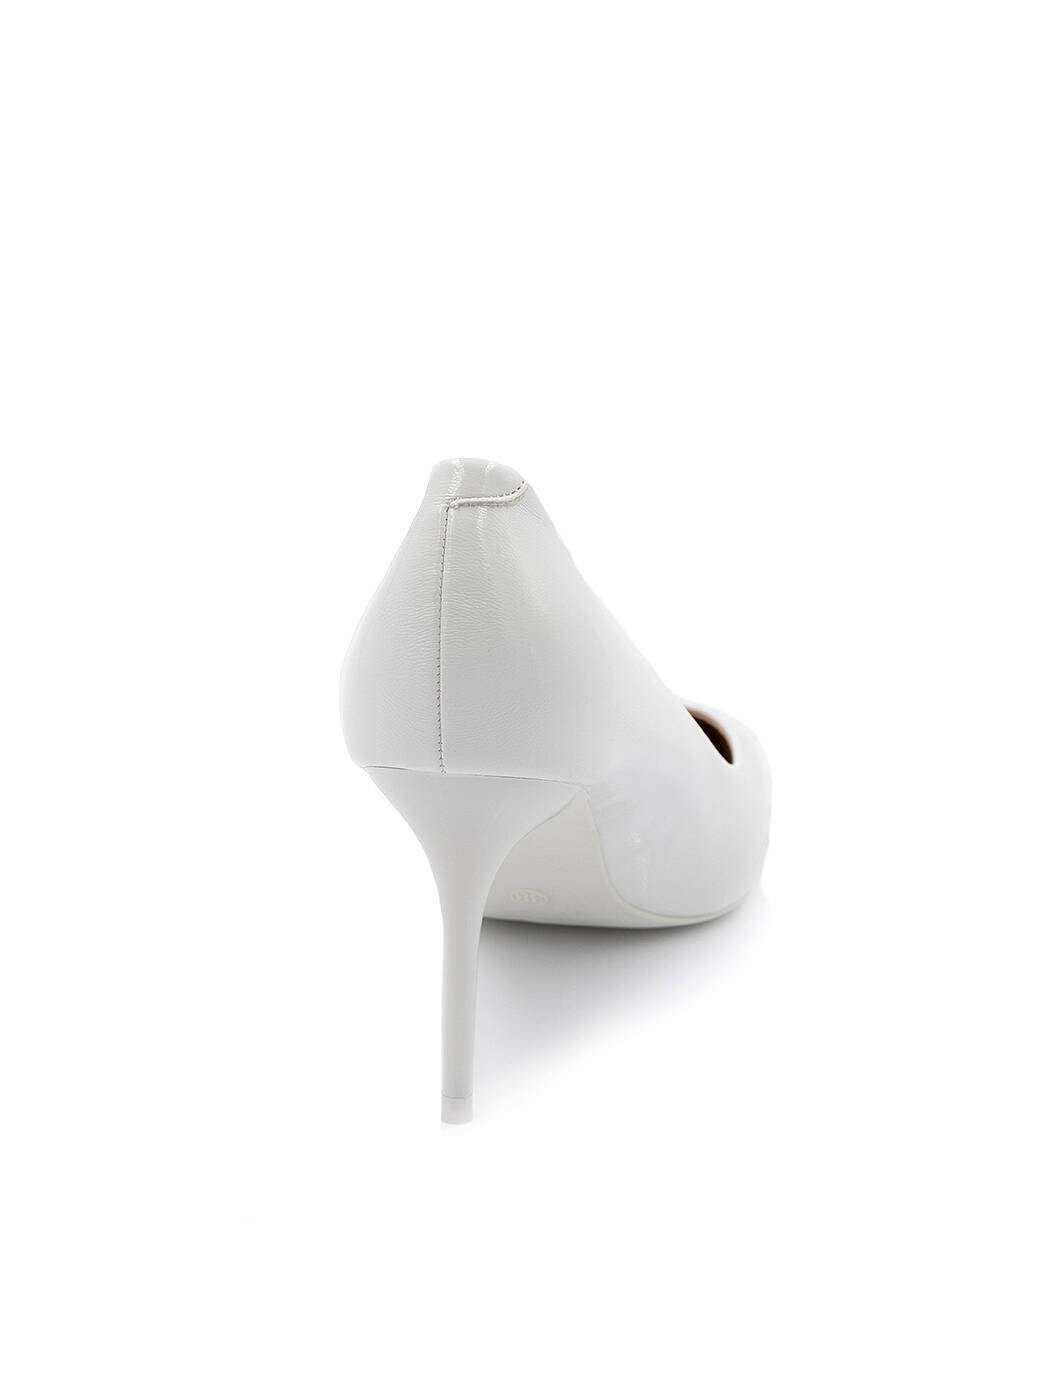 Туфлі жіночі білі штучний лак каблук шпилька демісезон від виробника FM вид 0